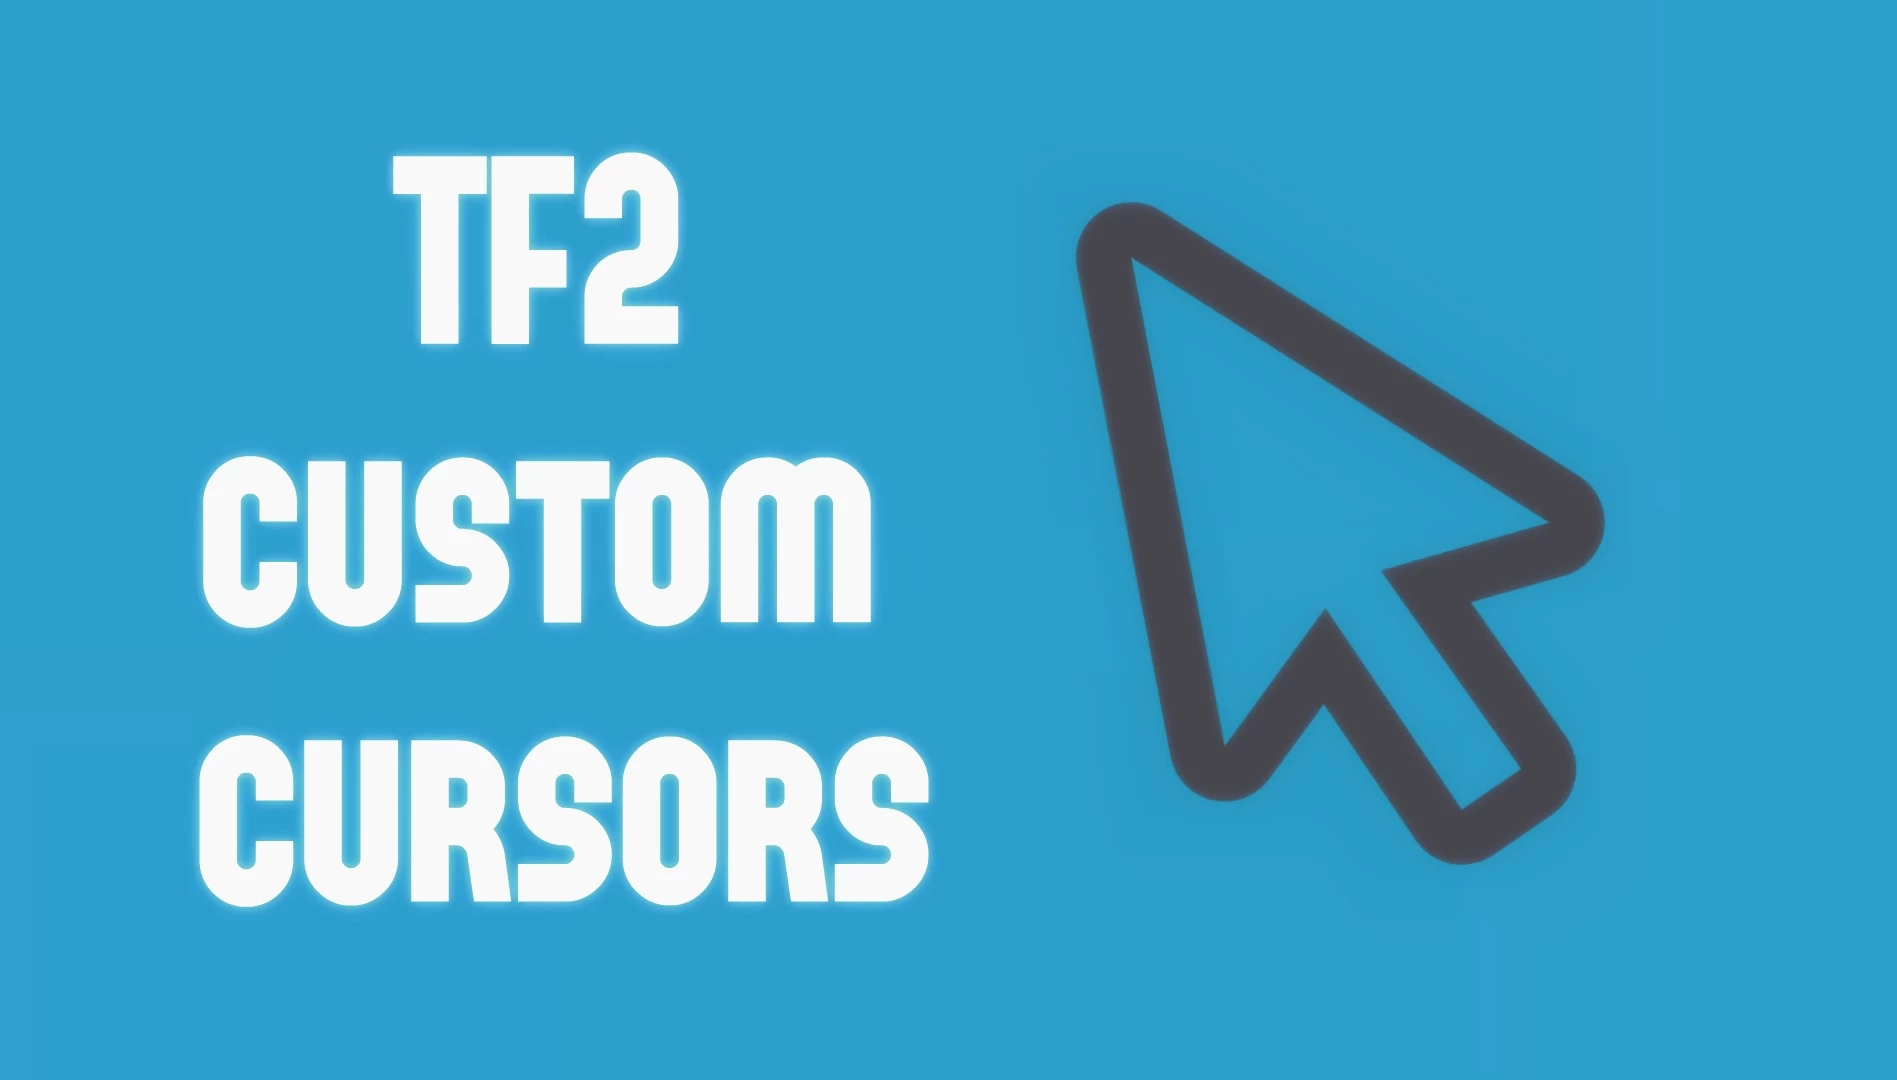 Creating A Custom Cursor Team Fortress 2 Tutorials - roblox custom cursors